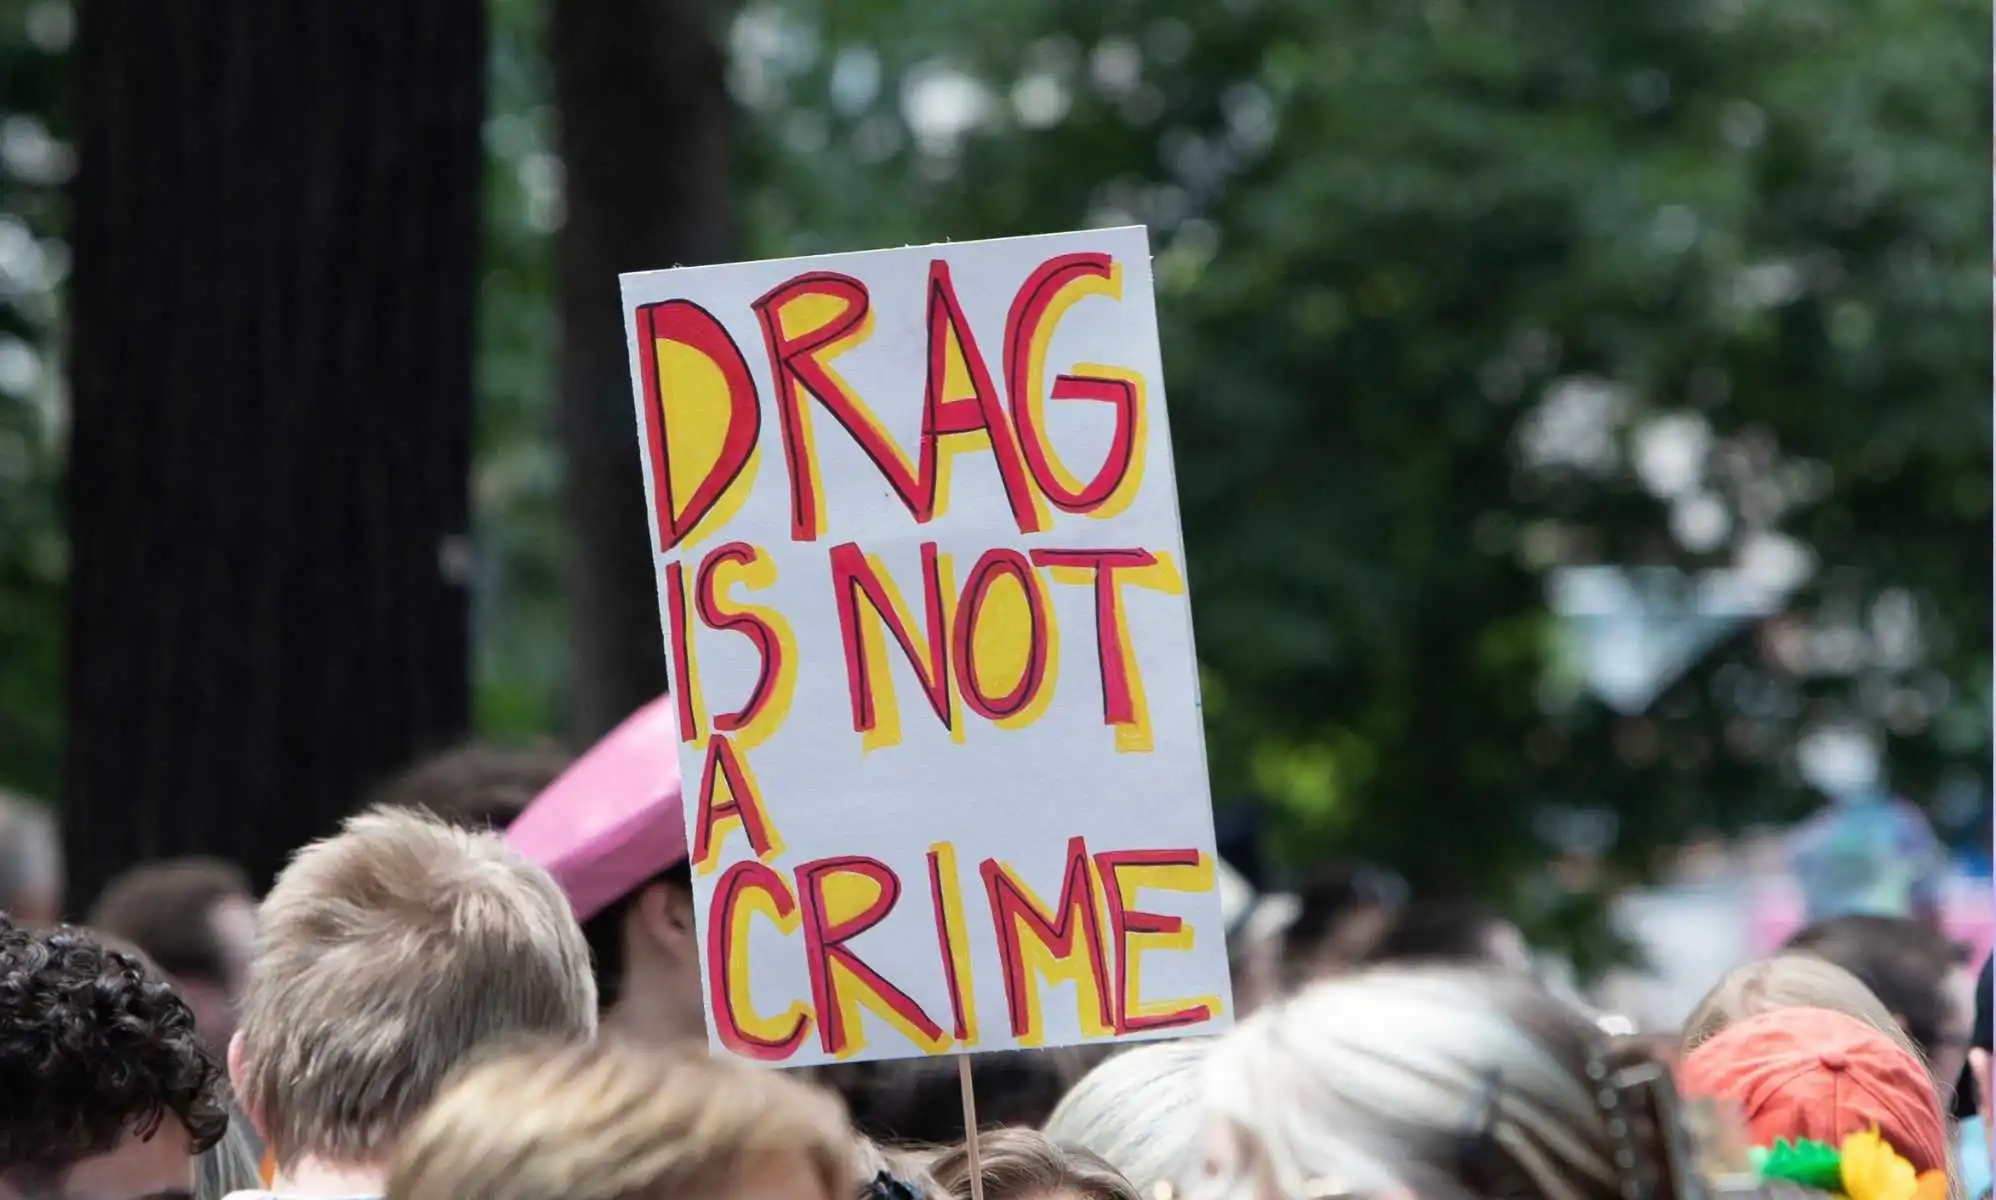 Más de 100 hombres detenidos en una operación contra la trata de seres humanos en Florida, y "ninguno" era una drag queen